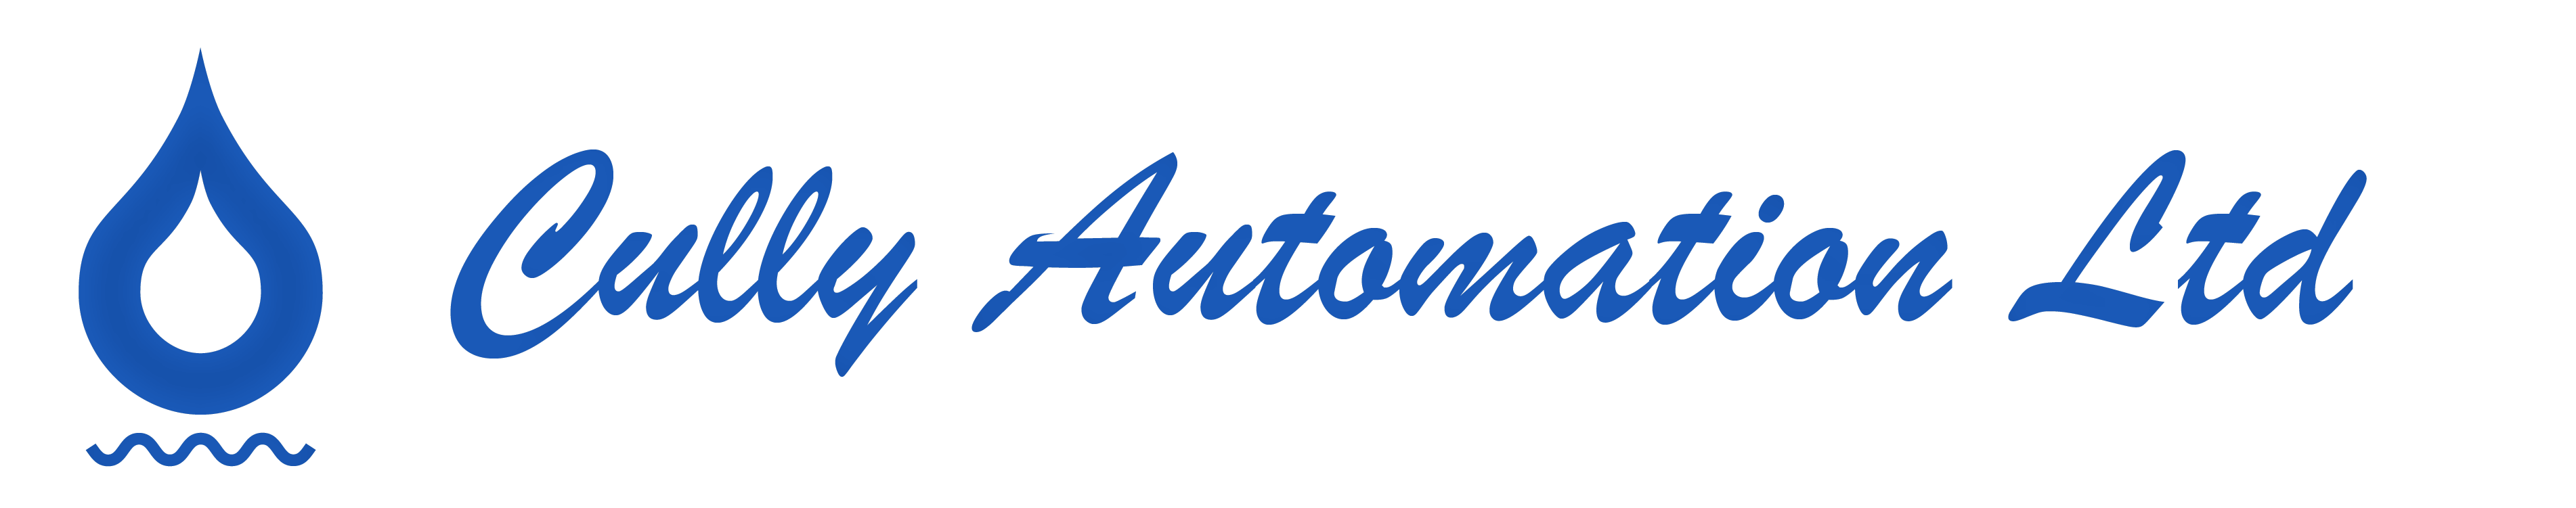 Cully Automation Ltd-logo